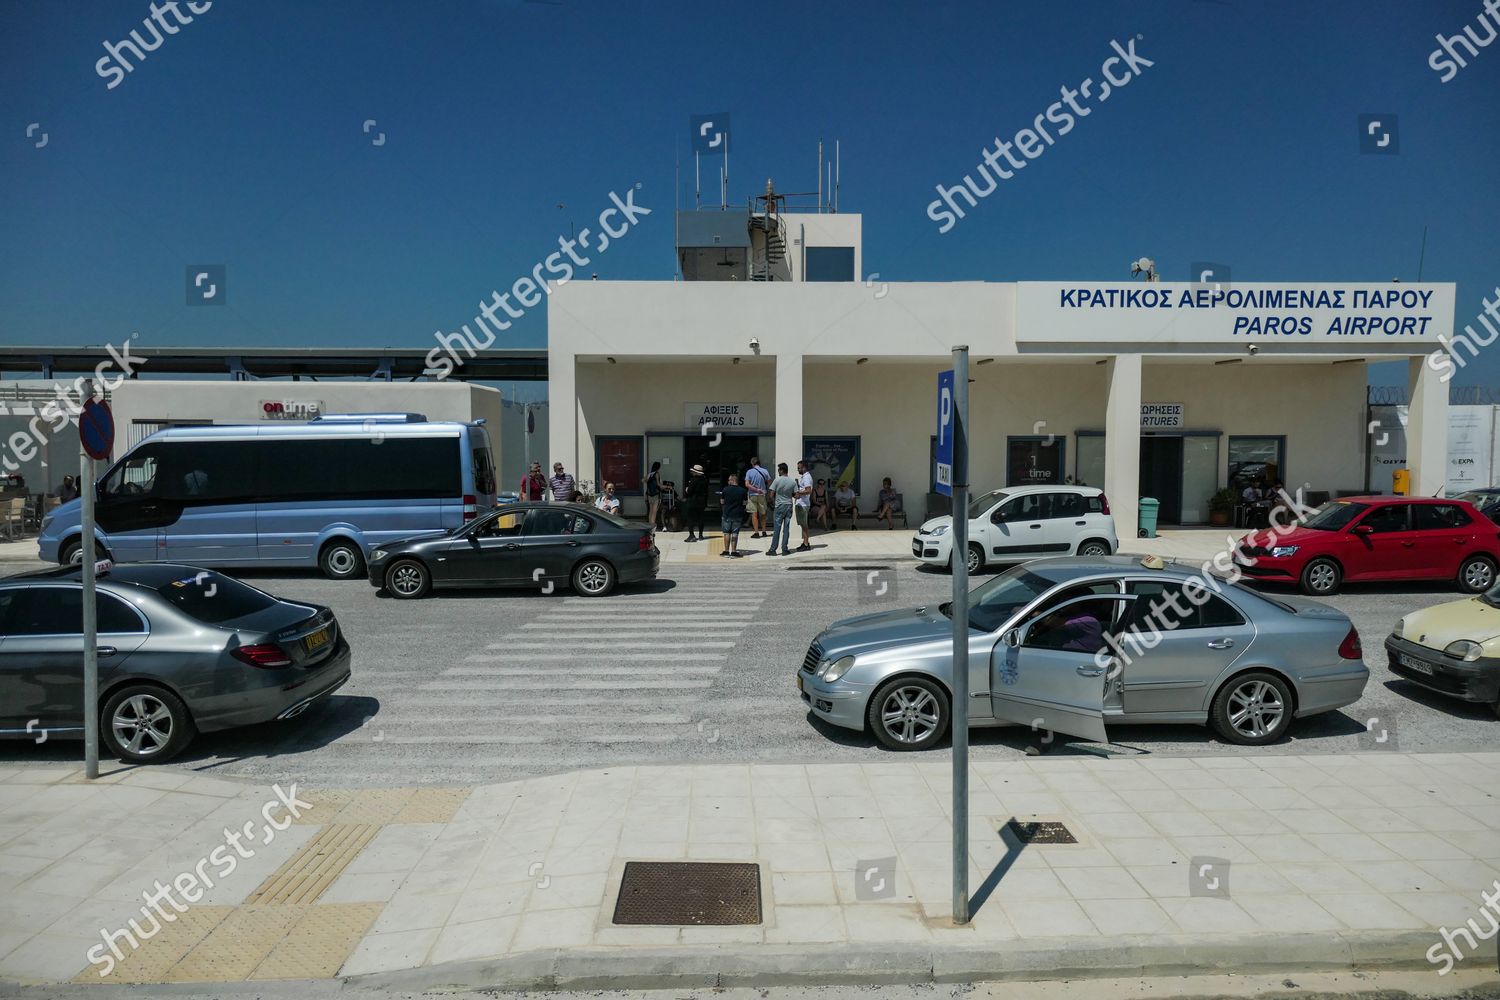 PAROS AIRPORT PARKING - Paros Airport Parking